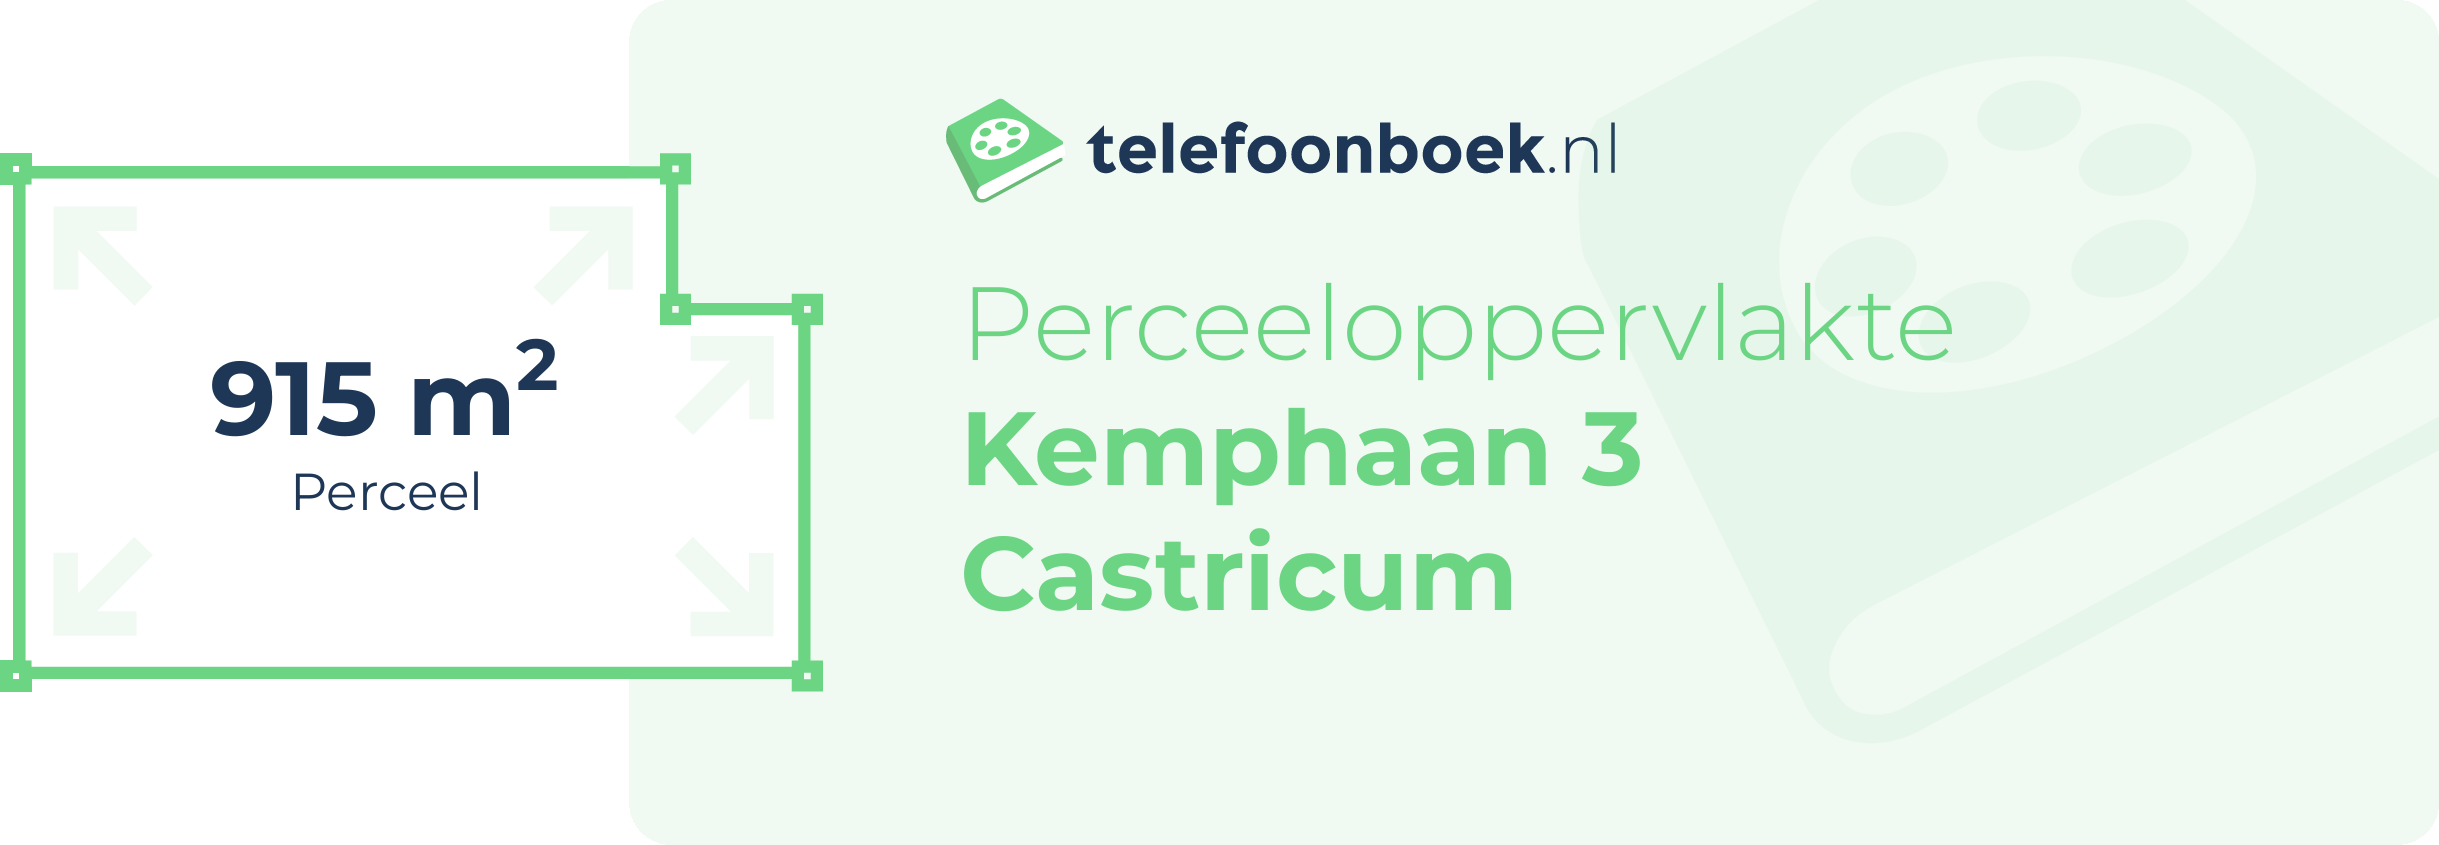 Perceeloppervlakte Kemphaan 3 Castricum